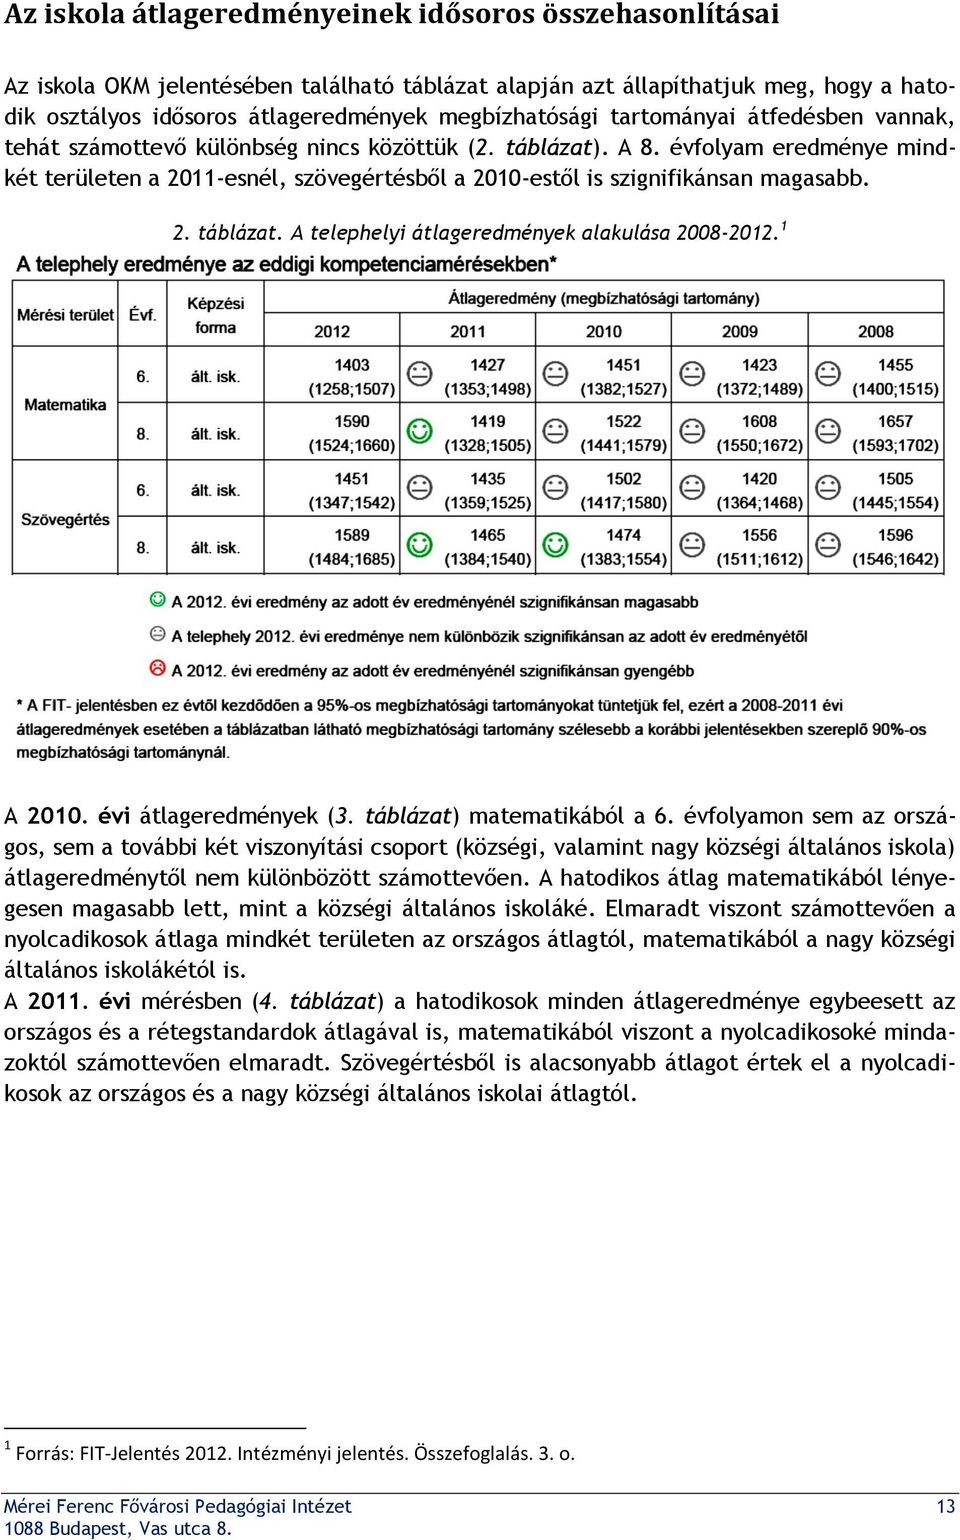 2. táblázat. A telephelyi átlageredmények alakulása 2008-2012. 1 A 2010. évi átlageredmények (3. táblázat) matematikából a 6.